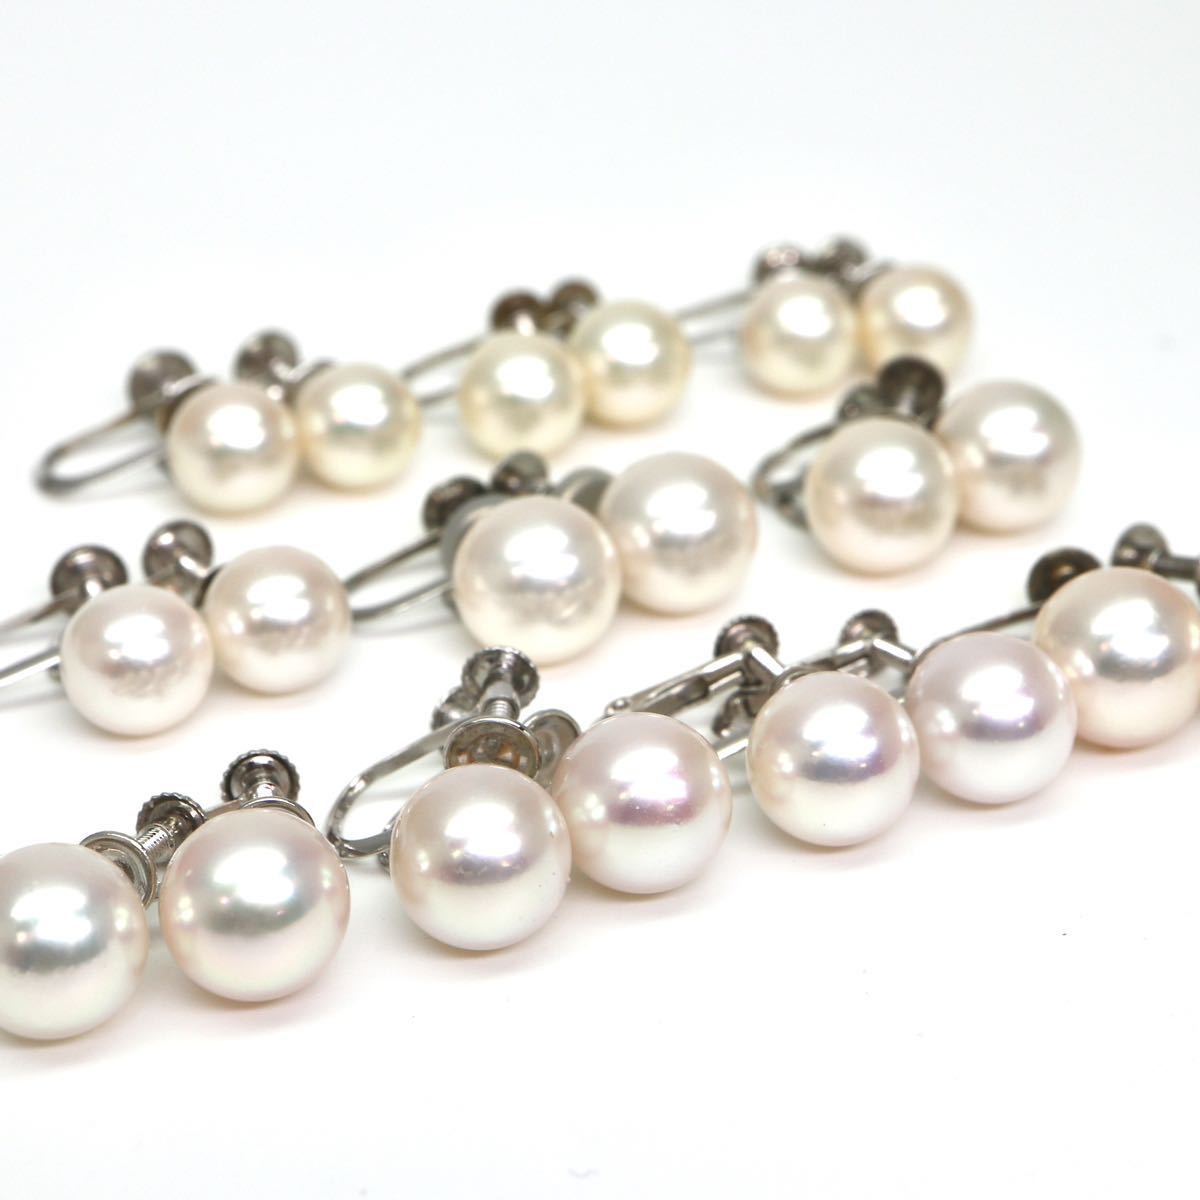 ◆Pt900/Pt850/K14 アコヤ本真珠 イヤリング10点おまとめ◆A 約23.3g 7.0-8.5mm珠 パール pearl ジュエリー earring pierce jewelry EC6の画像1